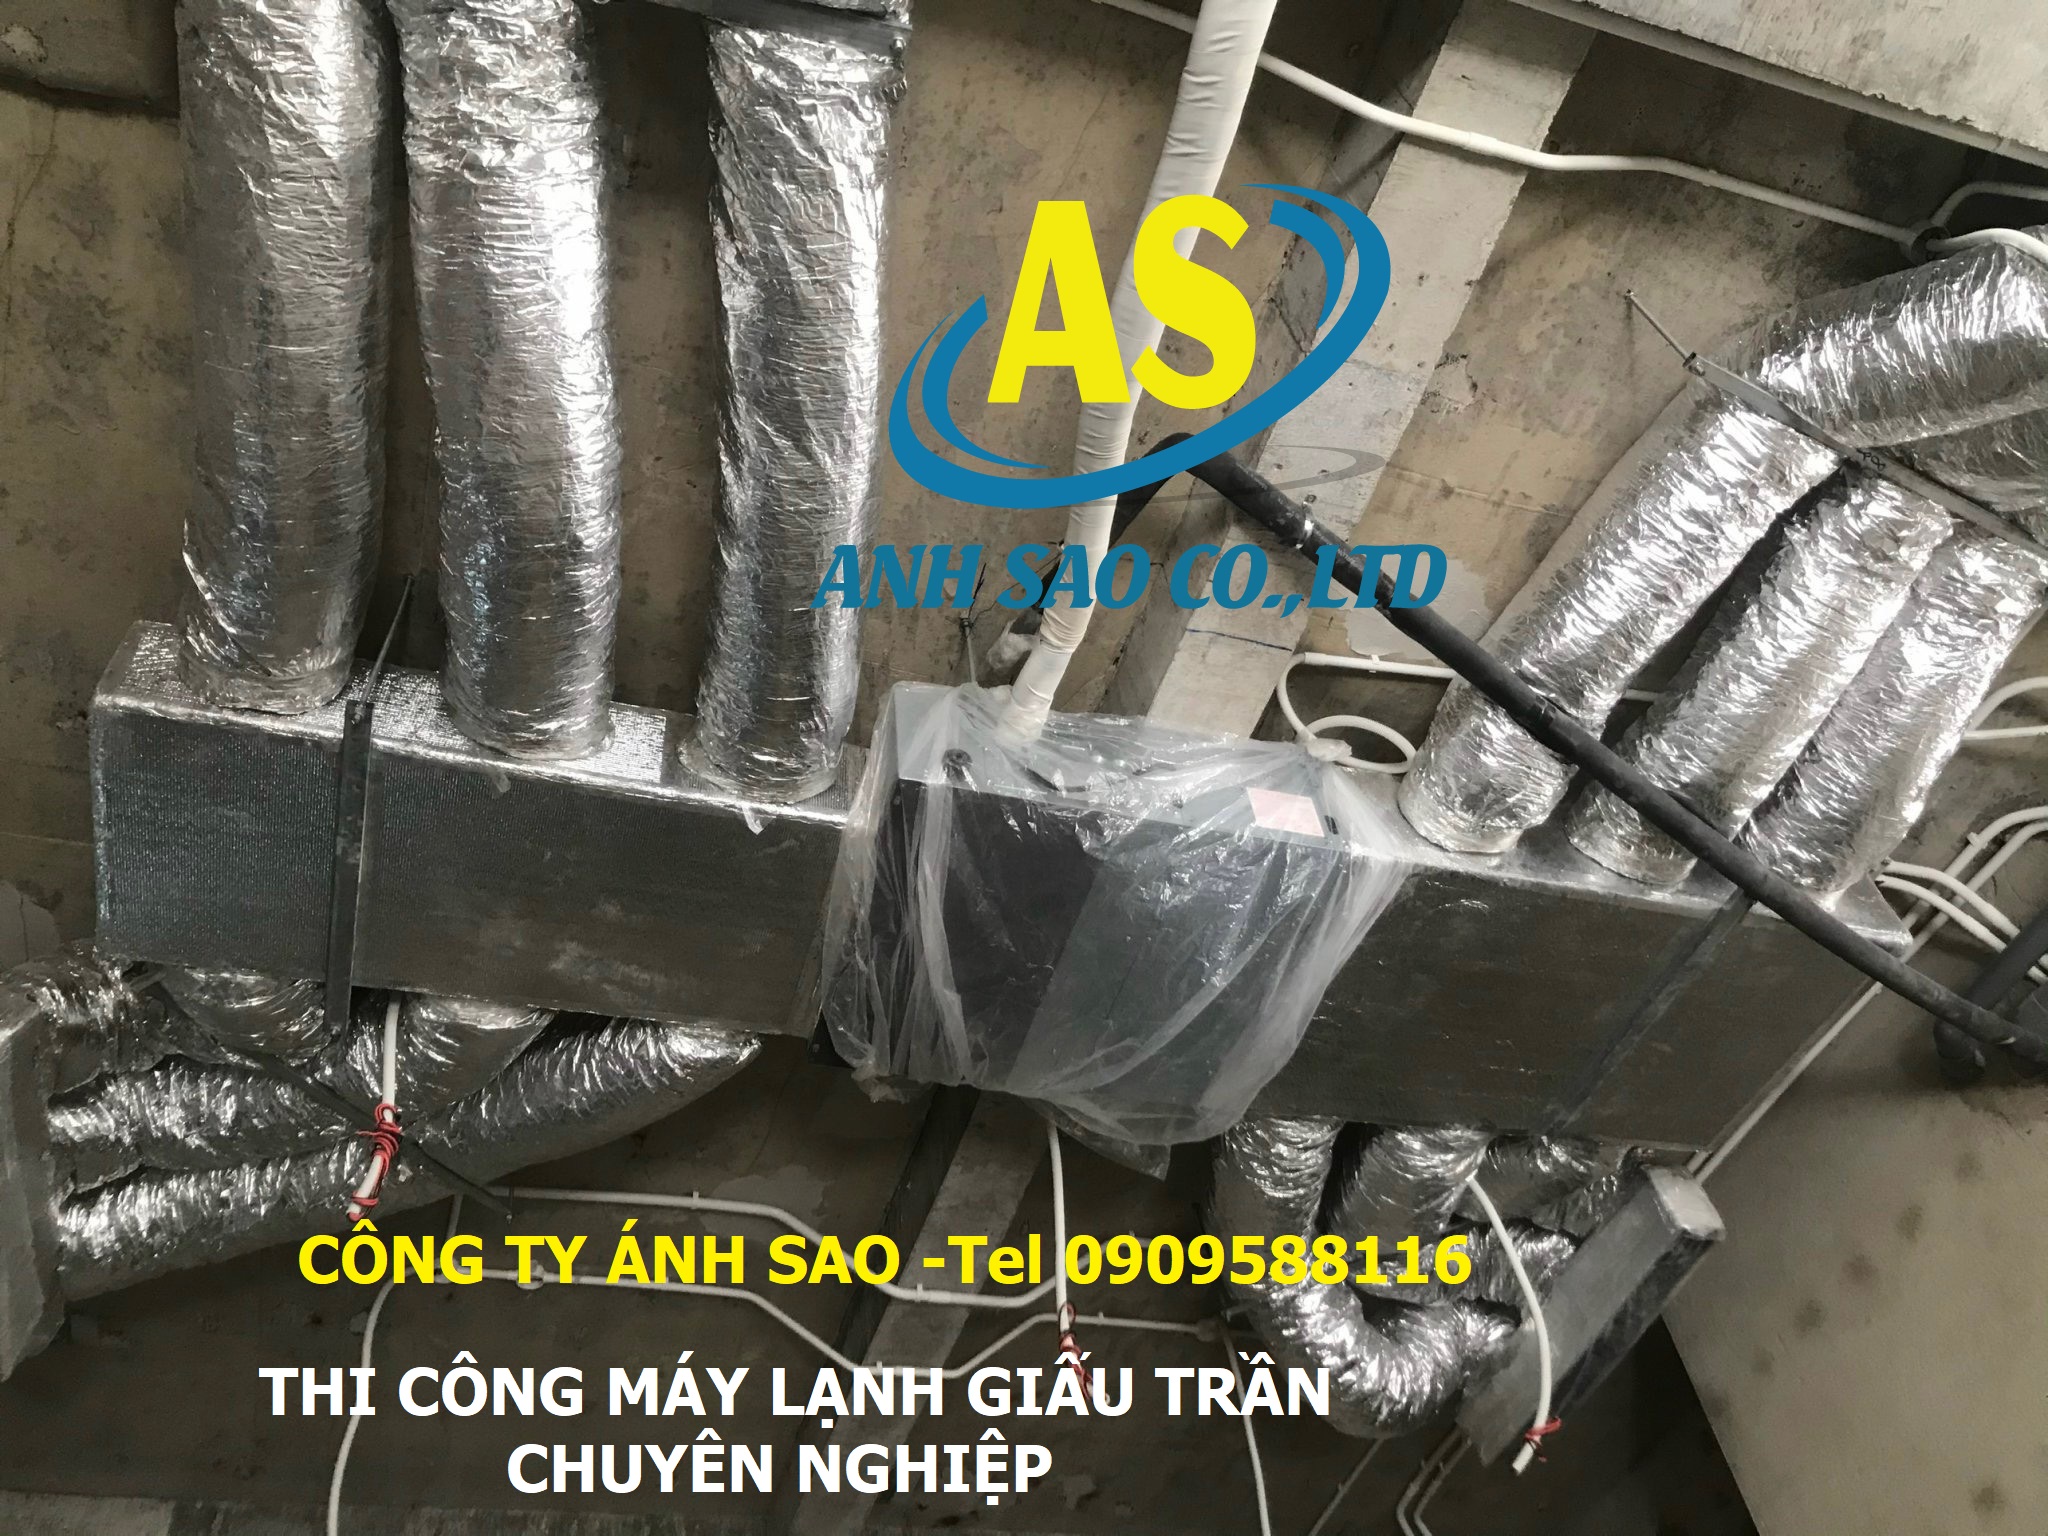 Lắp đặt máy lạnh tại Long Khánh Uy tín giá tốt LH 0909 588 116